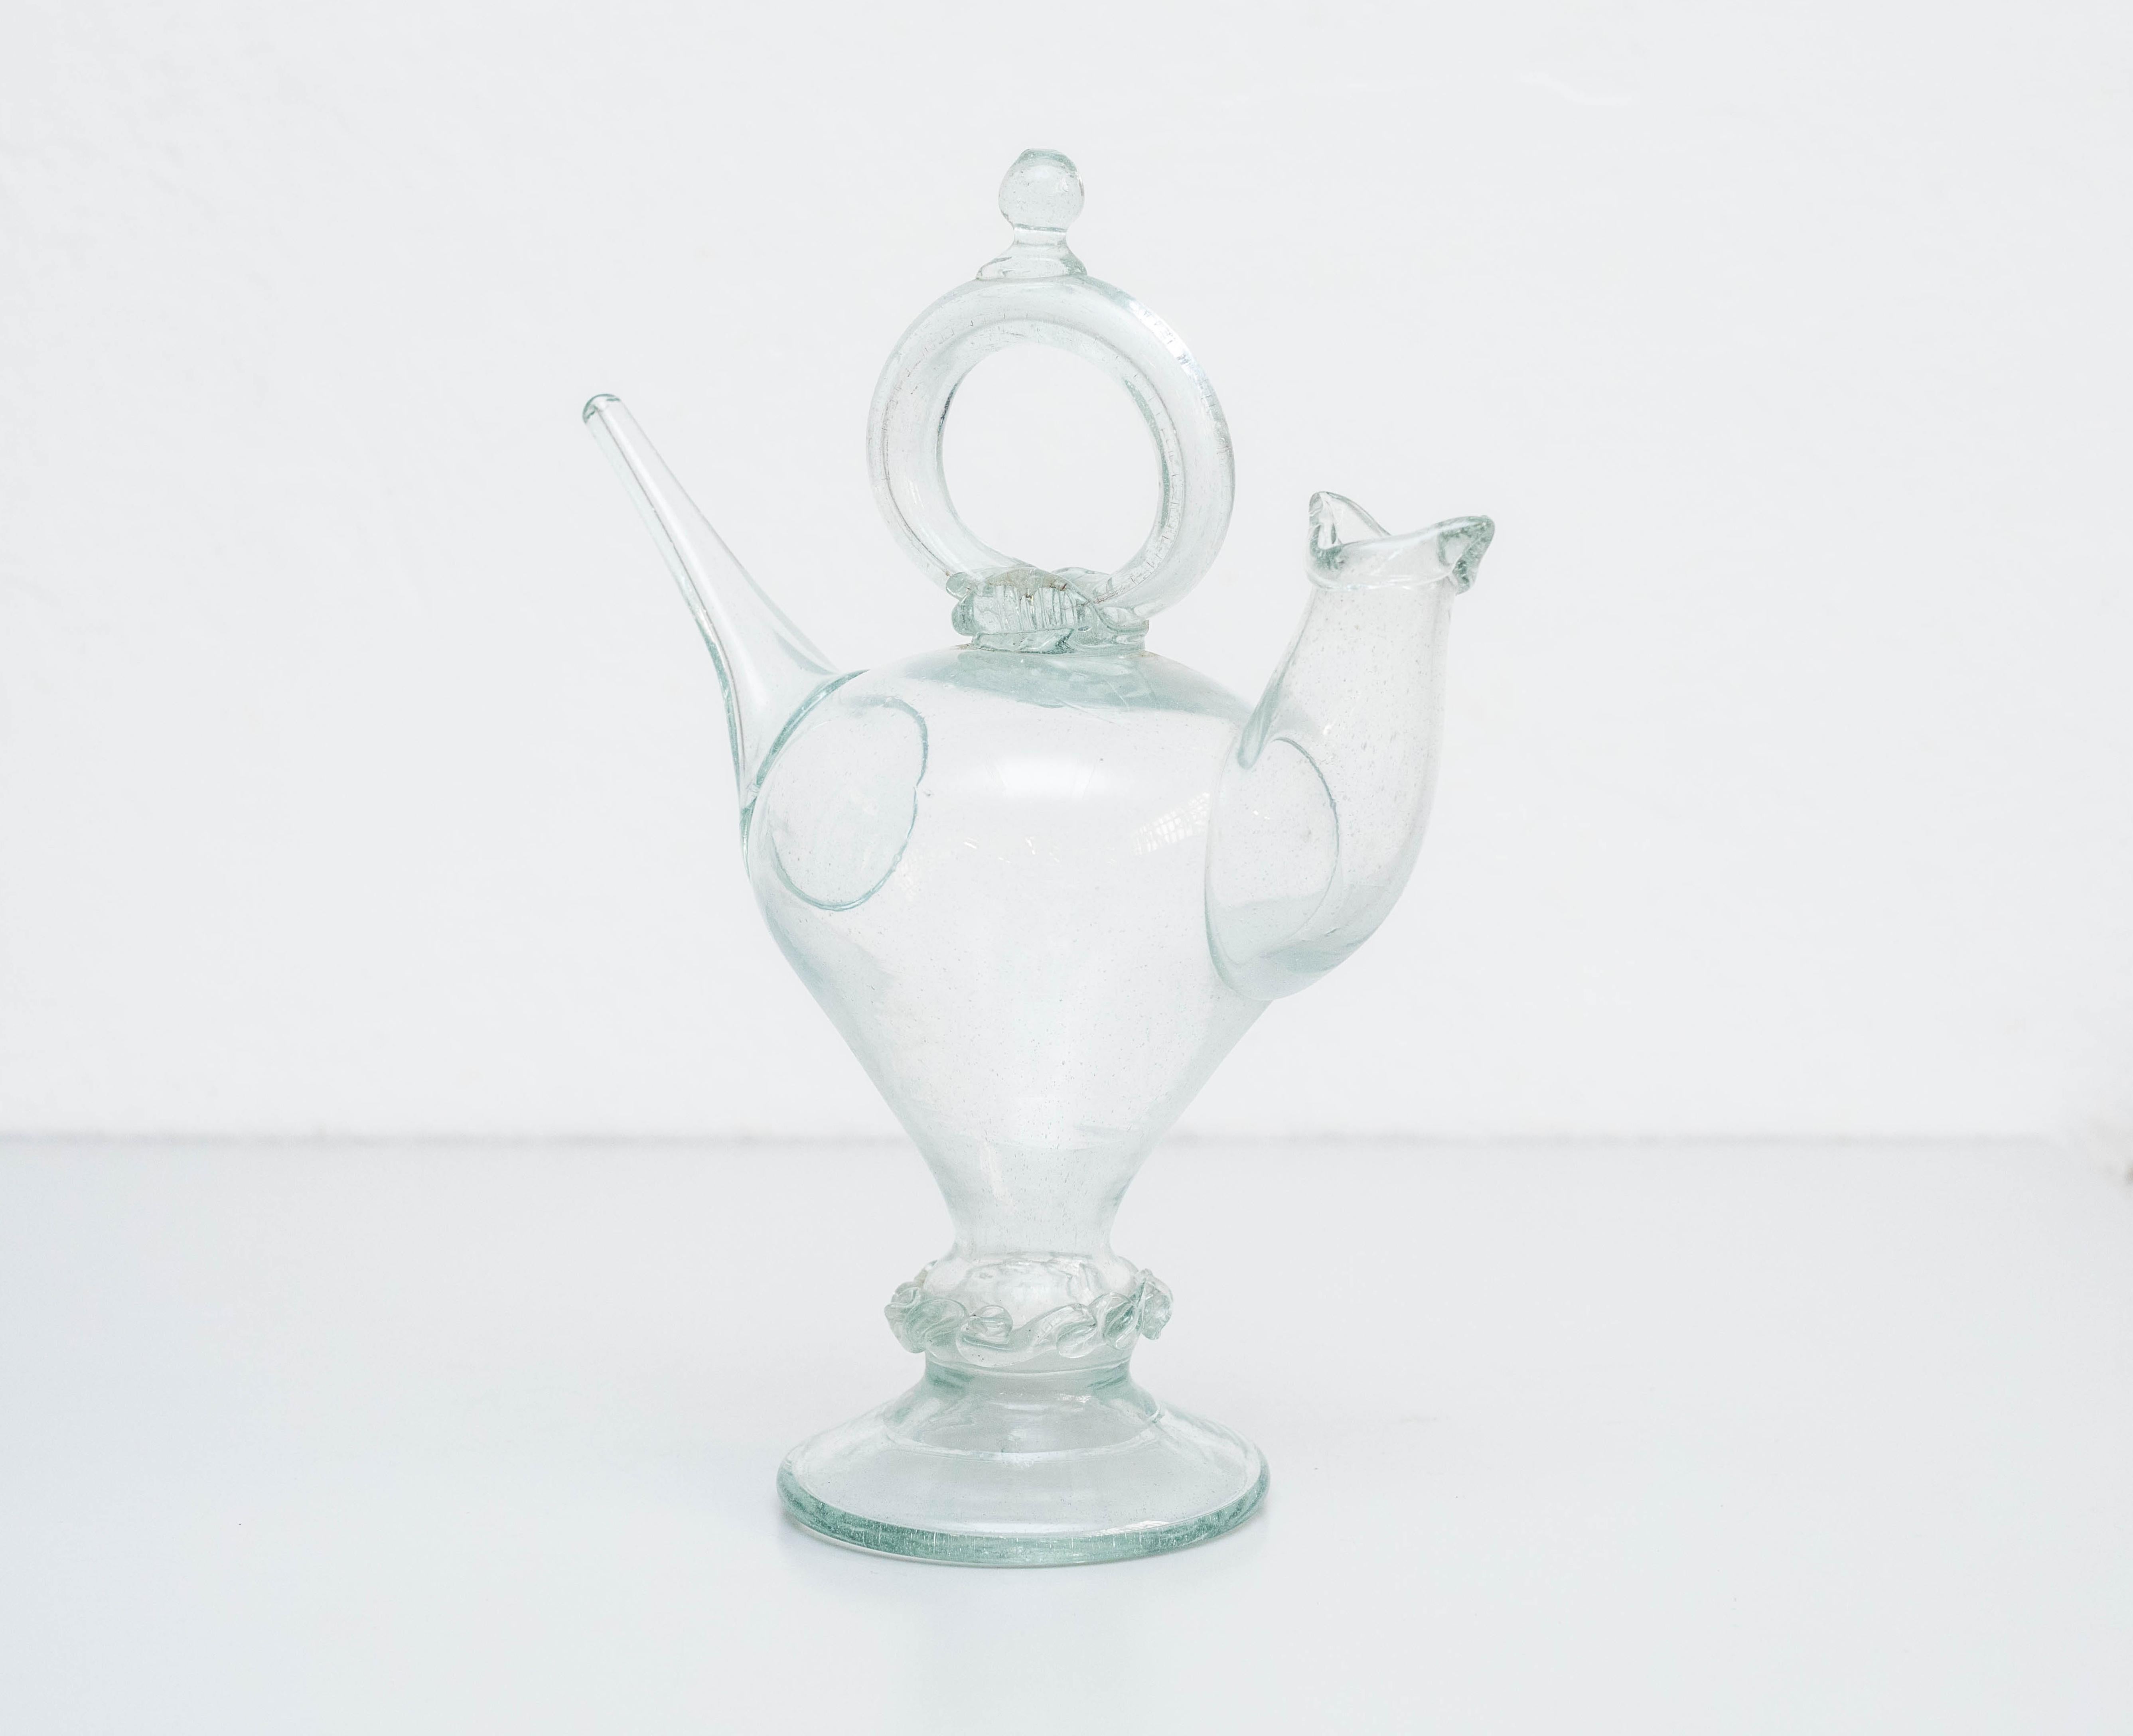 Traditionelle katalanische Vase aus geblasenem Glas, um 1930 
Hergestellt in Spanien.

Originaler Zustand mit geringen alters- und gebrauchsbedingten Abnutzungserscheinungen, der eine schöne Patina aufweist.

Material:
Glas

Abmessungen:
 D